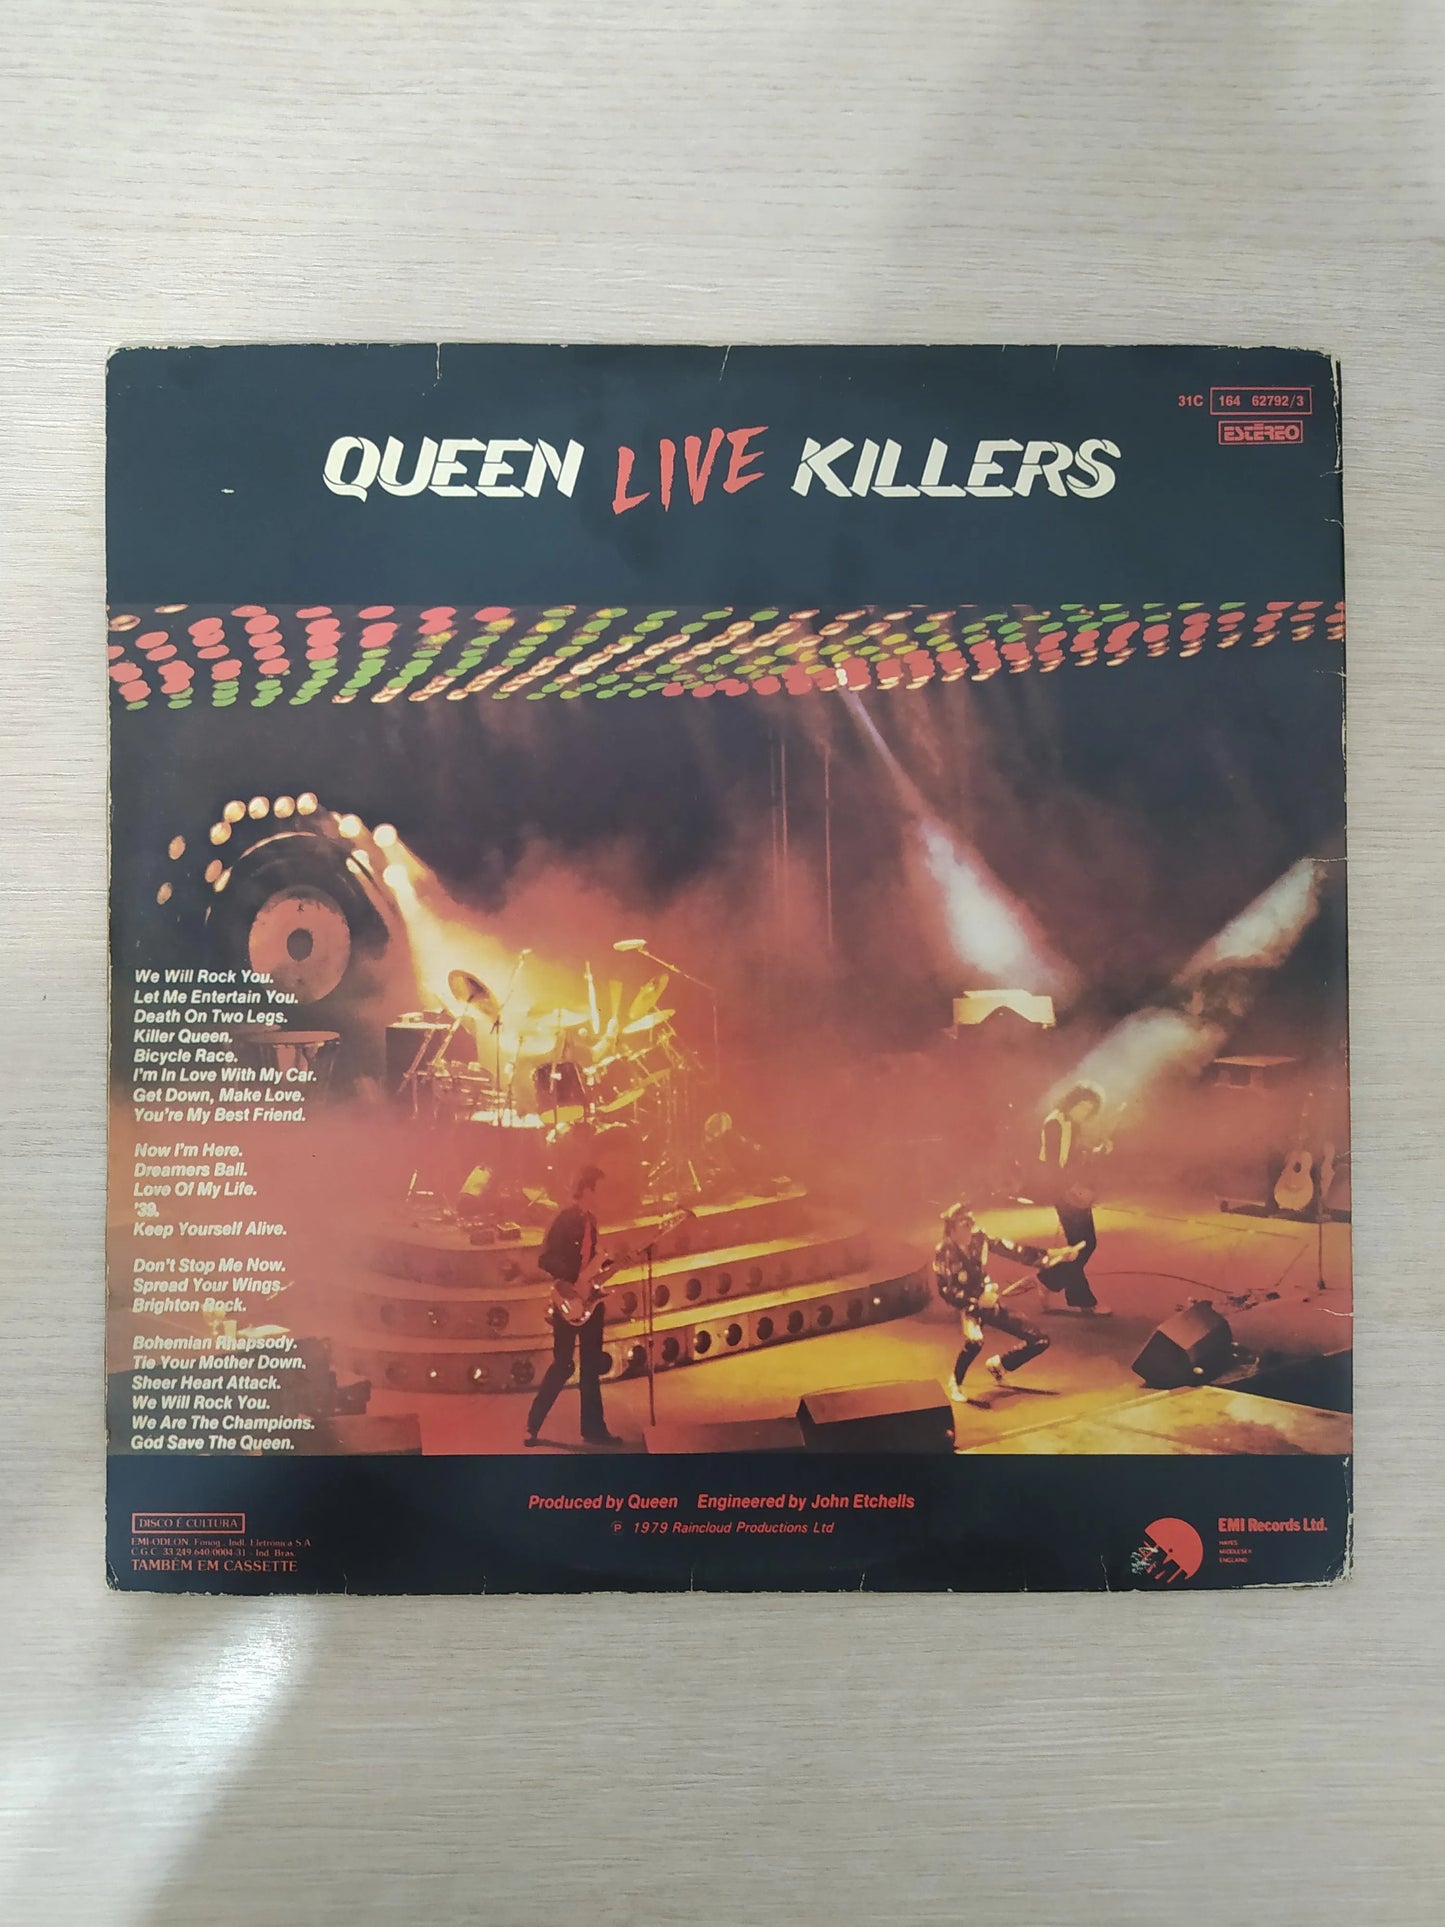 Lp Vinil Queen Live Killers Duplo Com Encarte